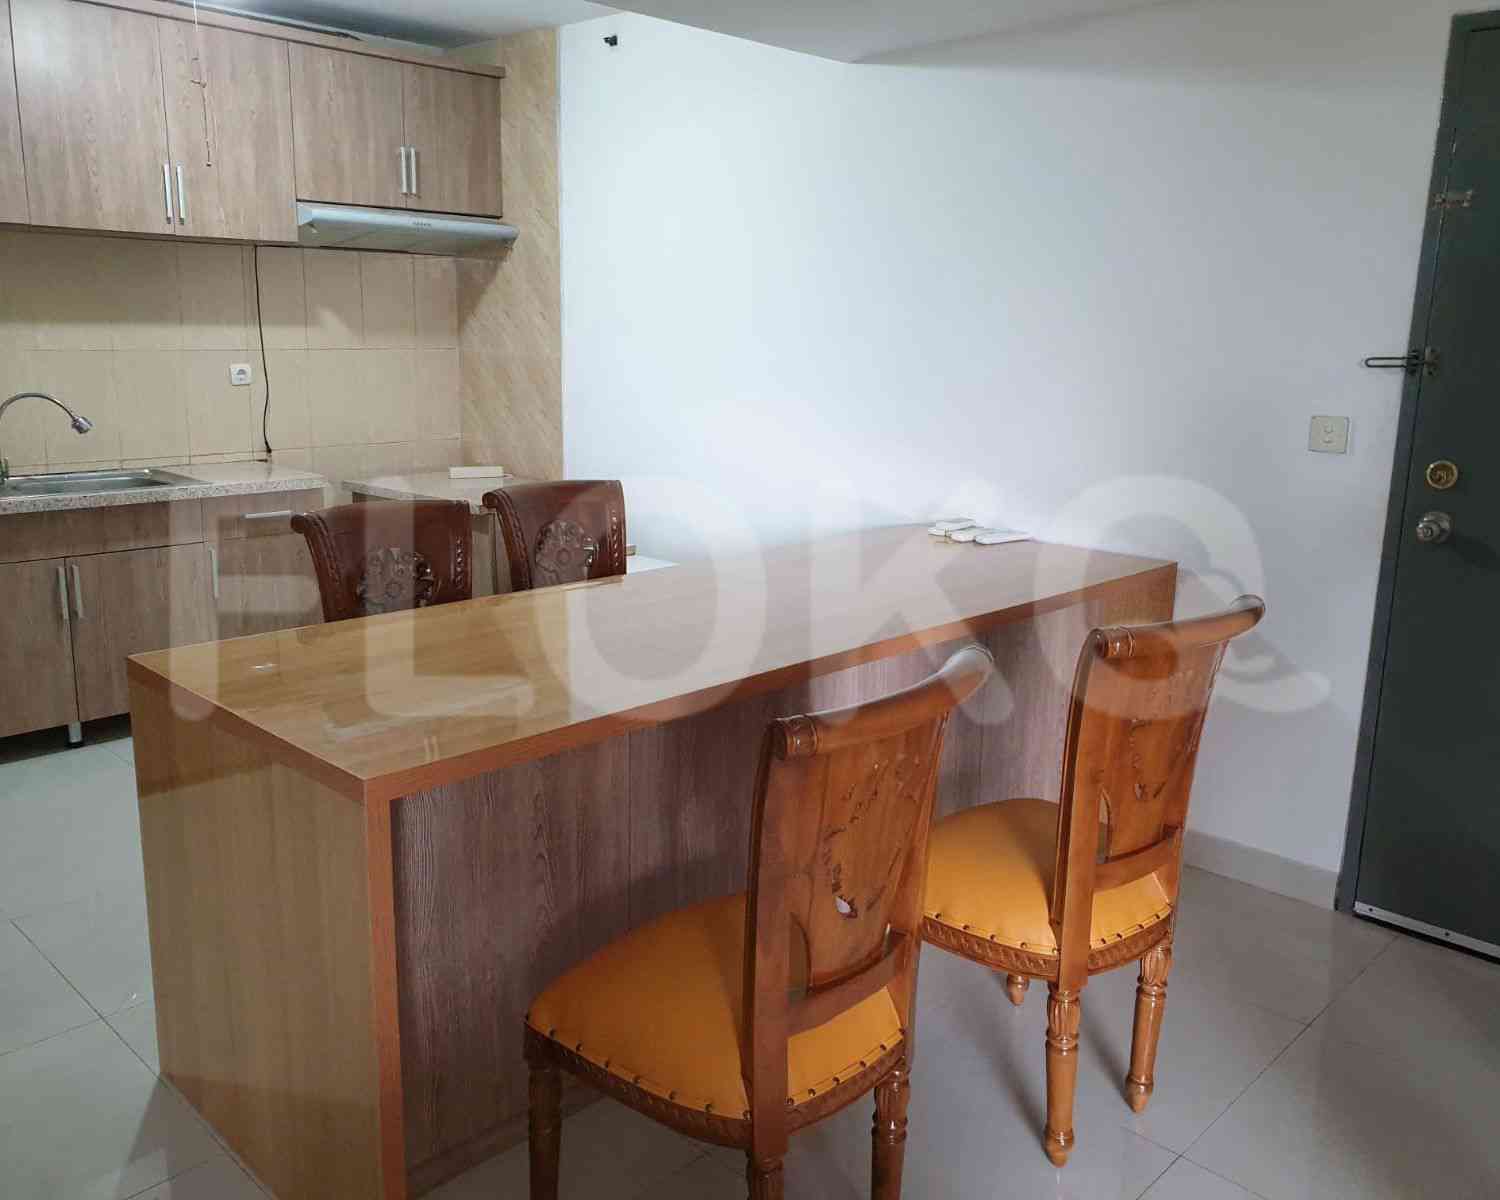 3 Bedroom on 7th Floor for Rent in Taman Rasuna Apartment - fkudaa 3